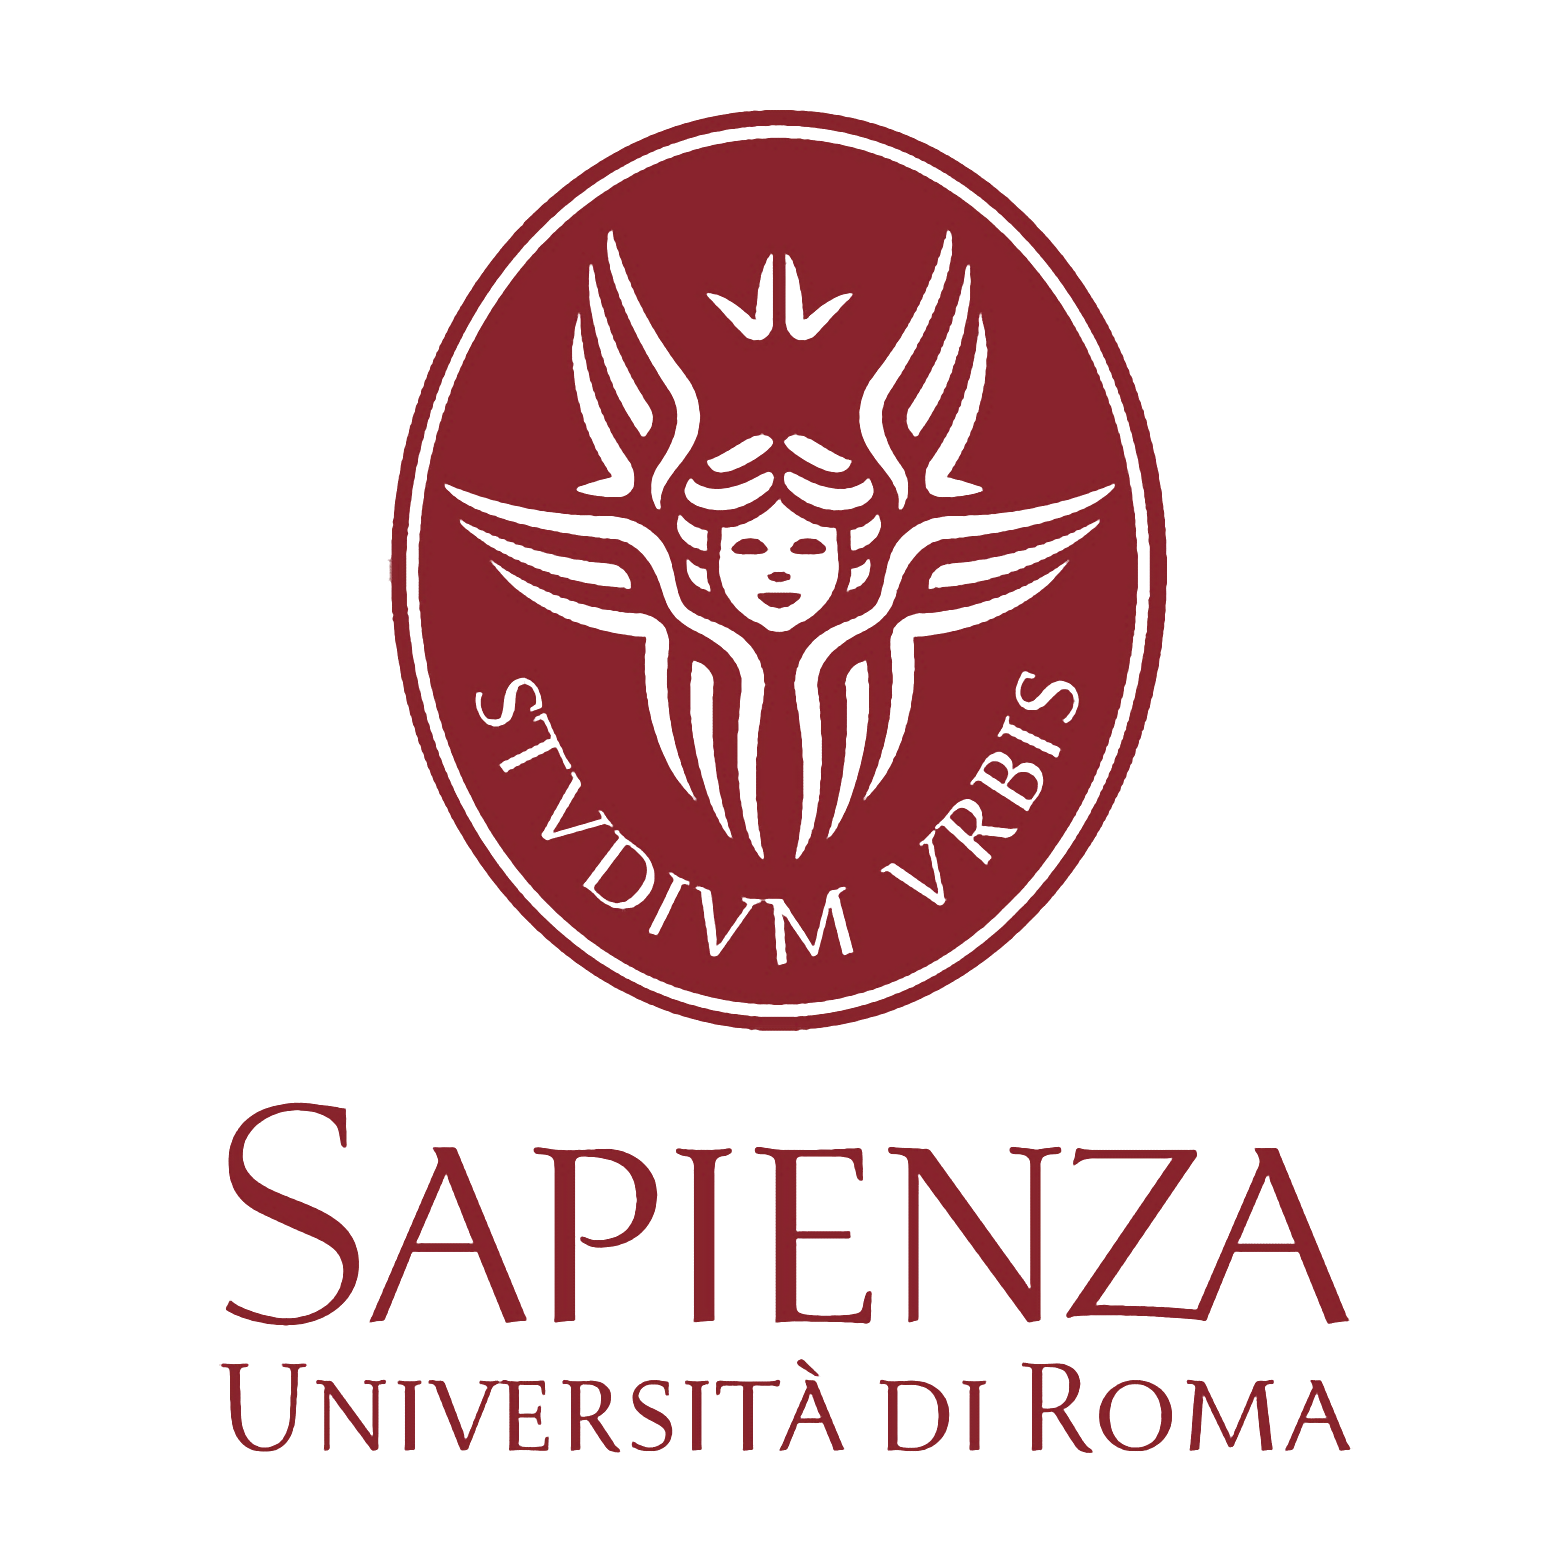 Università Sapienza di Roma